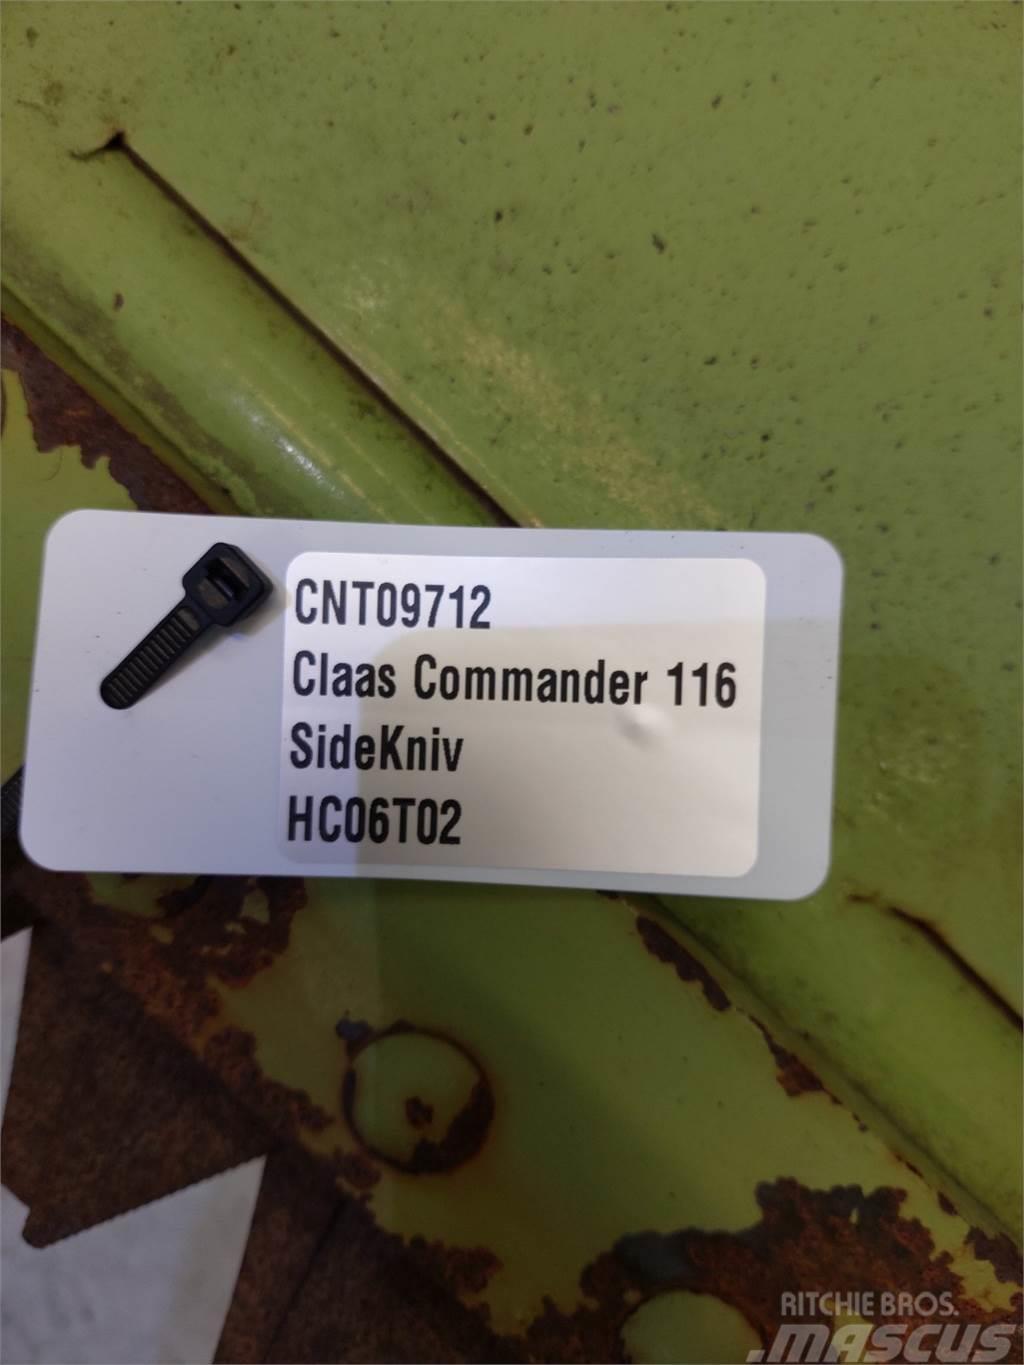 CLAAS Commandor 116 Lisävarusteet ja komponentit